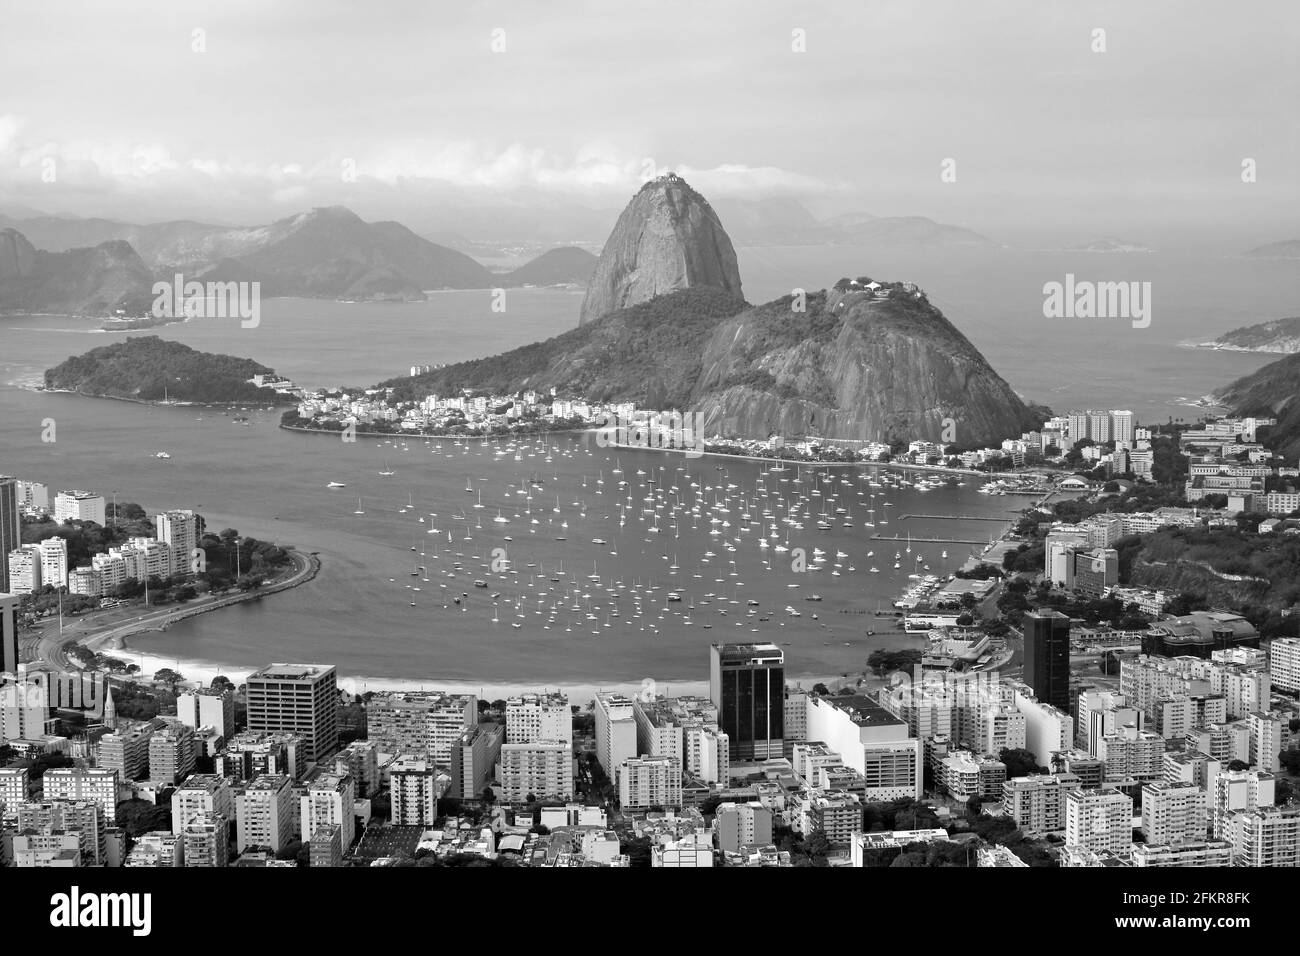 Veduta aerea monocromatica di Rio de Janeiro con il famoso Pan di zucchero visto dalla collina di Corcovado a Rio de Janeiro, Brasile Foto Stock